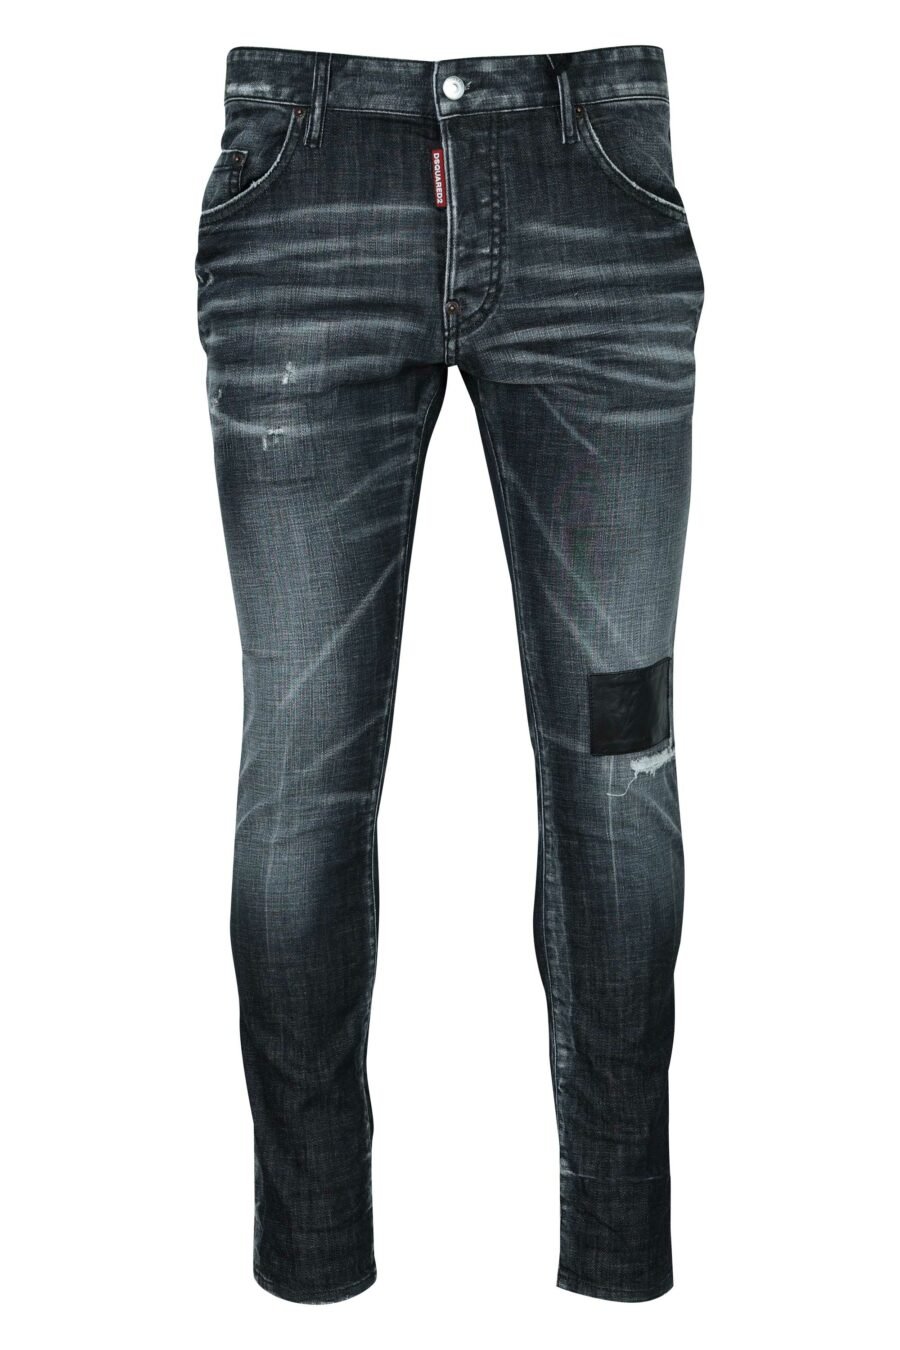 Schwarze "Skater-Jeans" mit Aufnäher und halb zerschlissen - 8054148522018